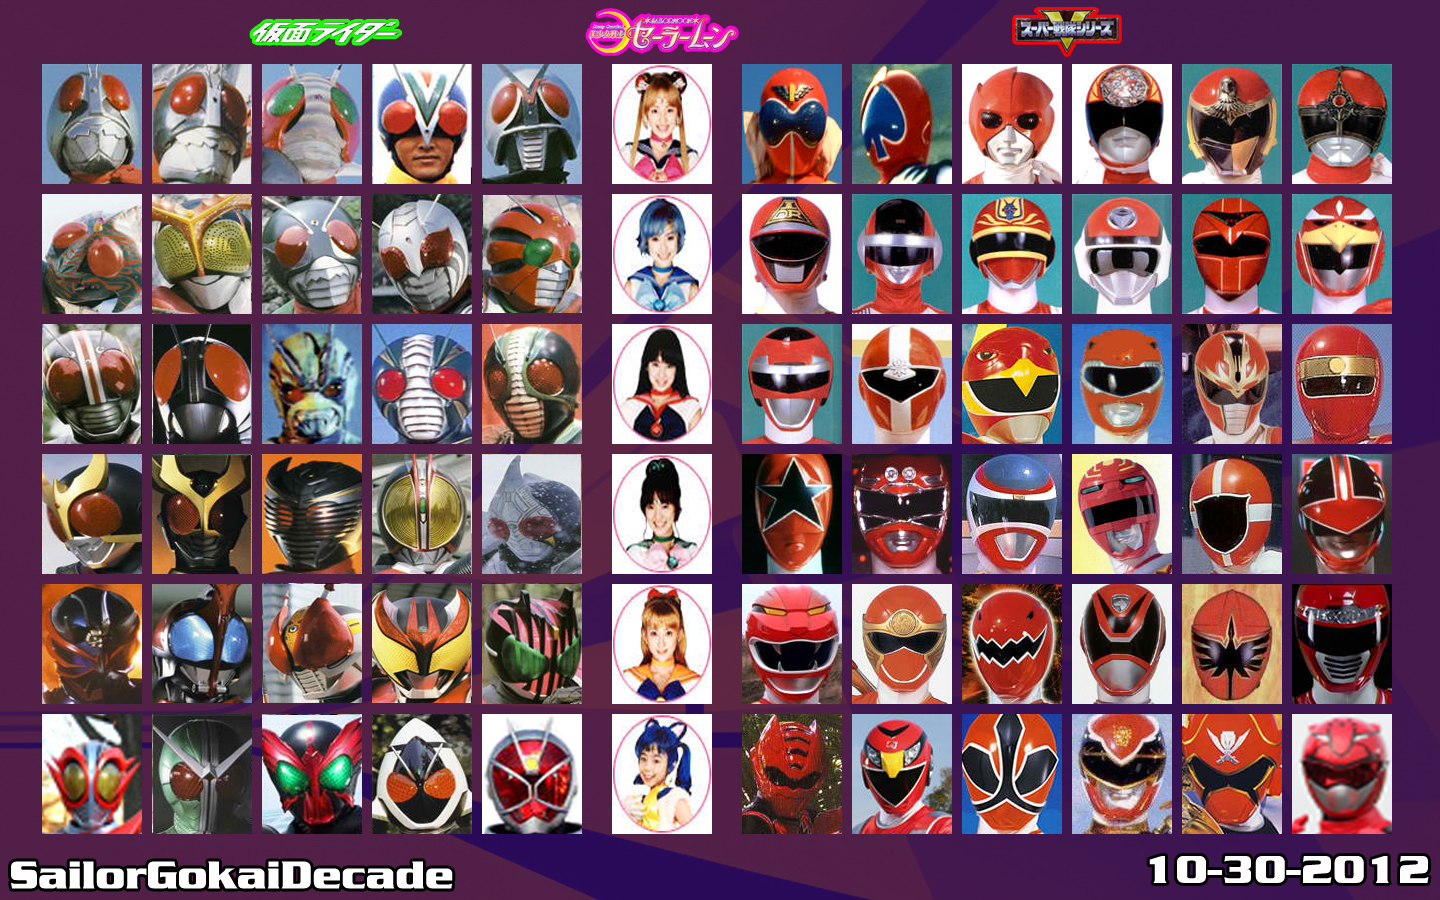 Super Sentai Wallpapers